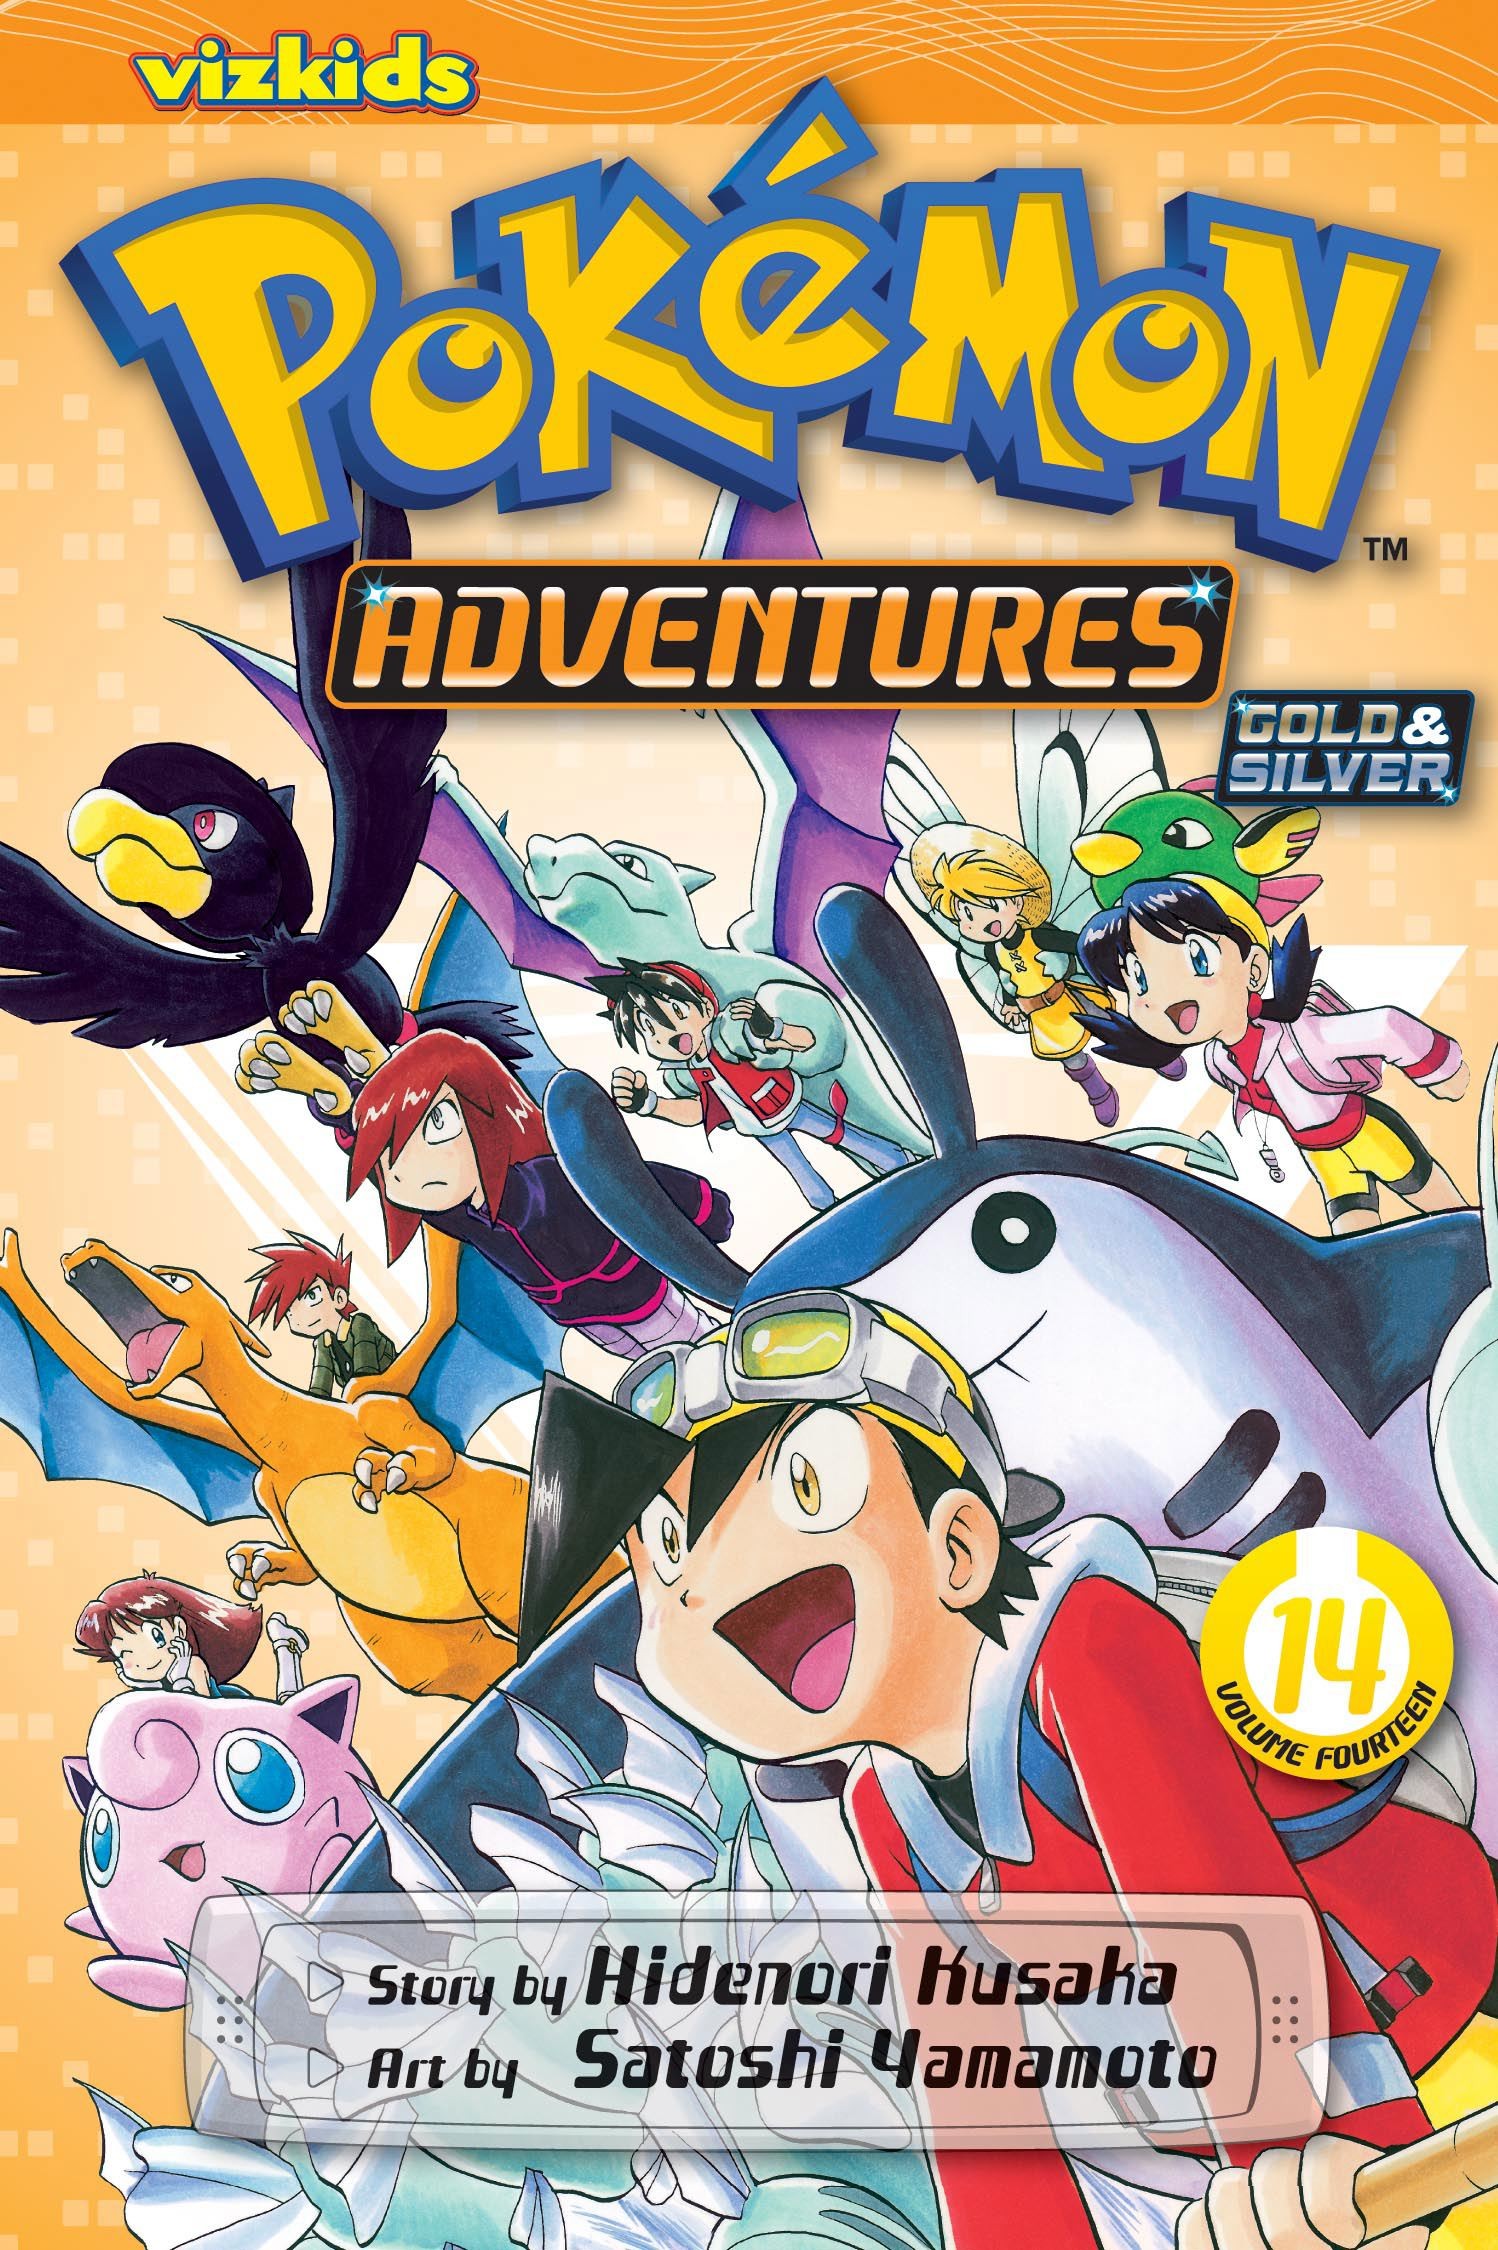 Pokémon Adventures, Vol. 14 by Hidenori Kusaka